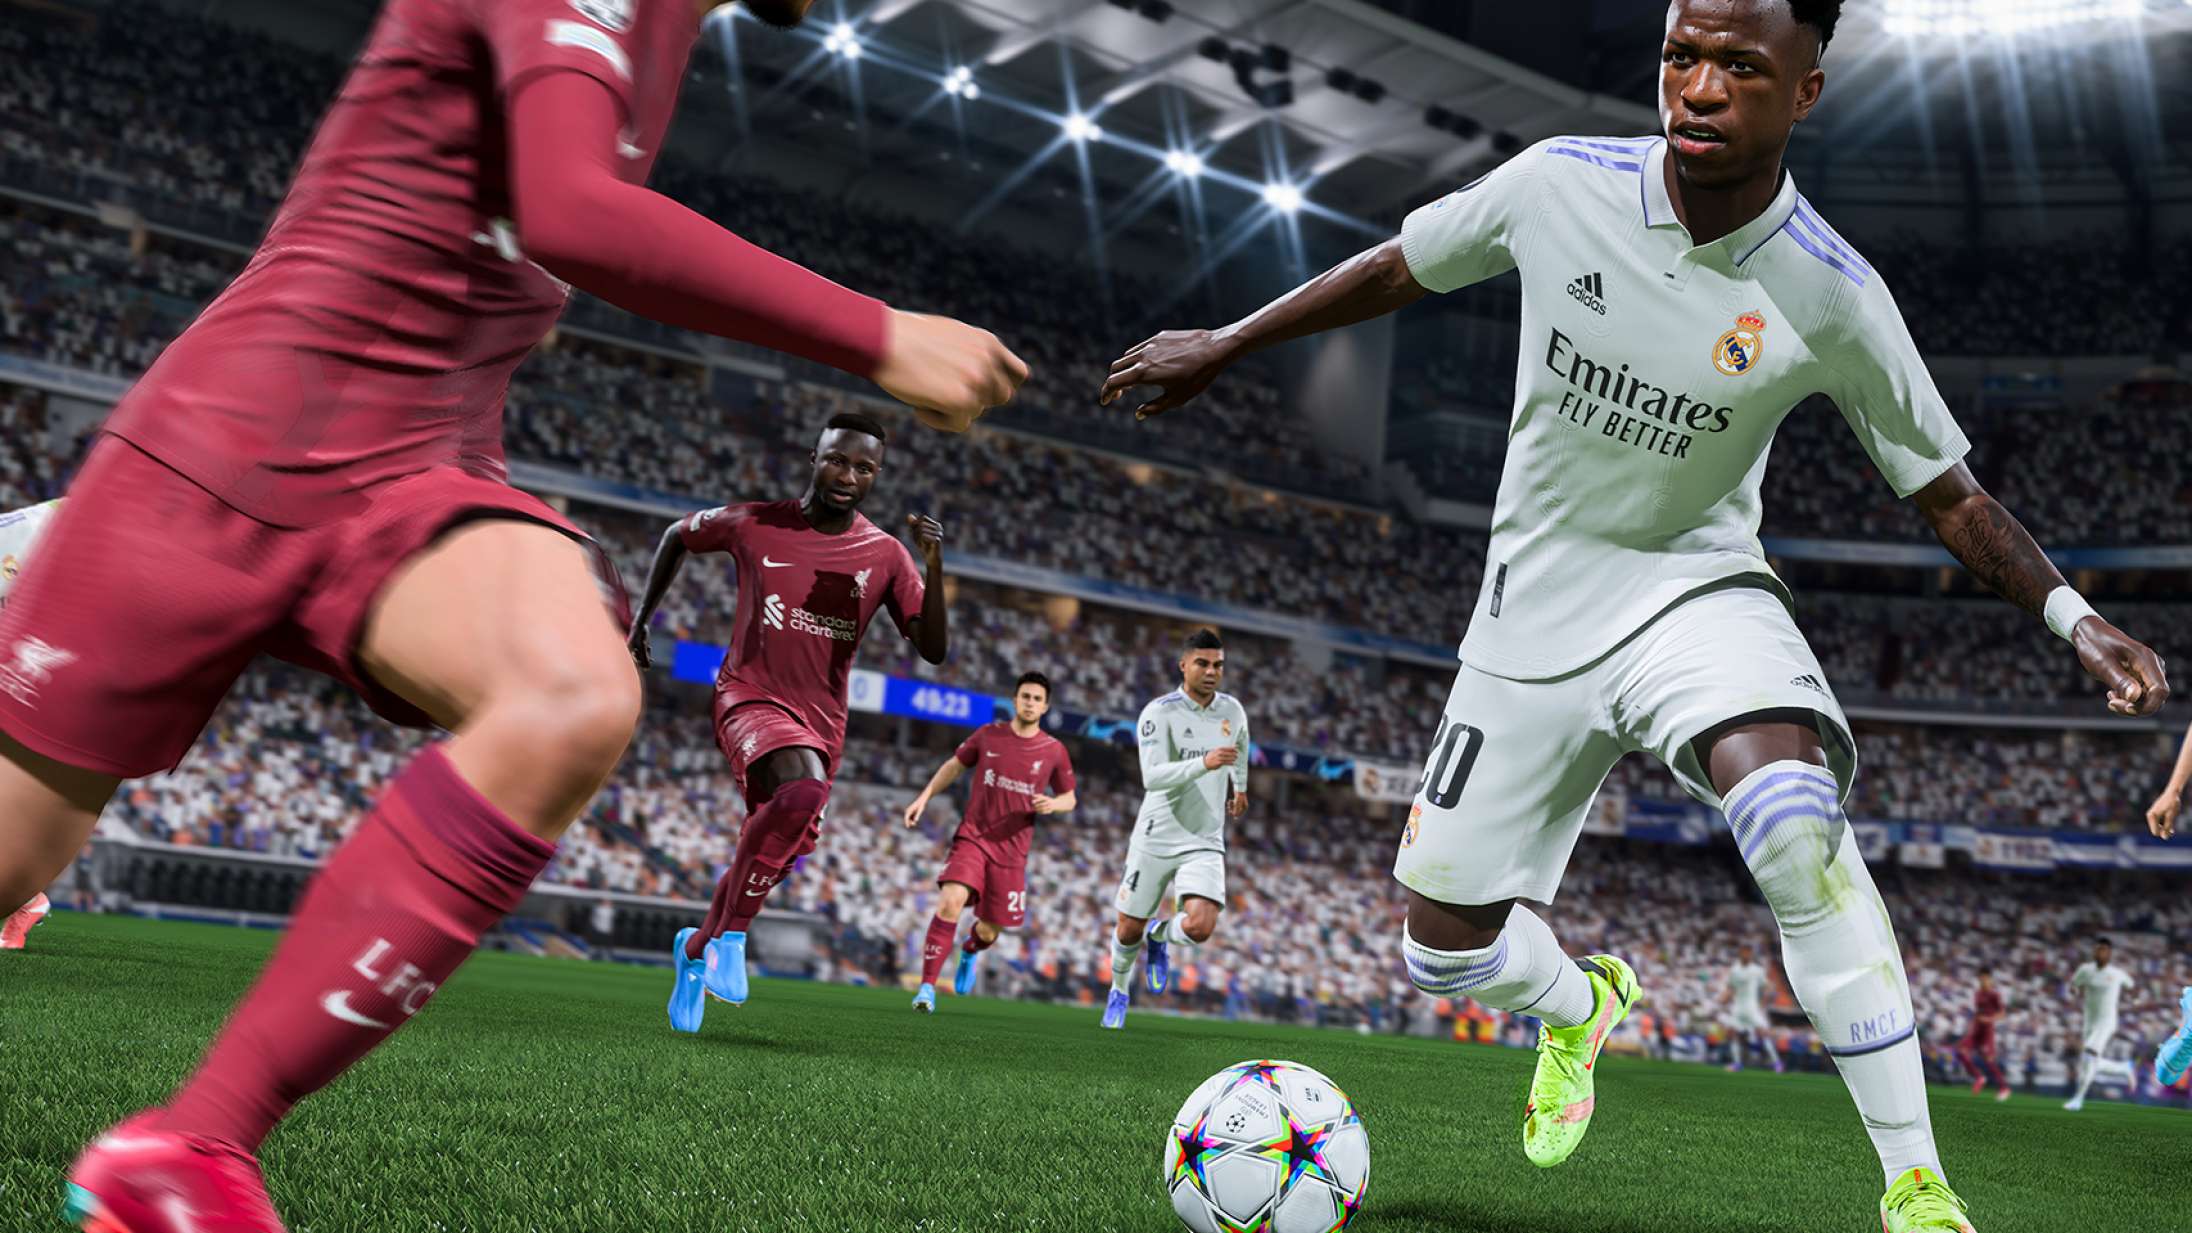 Du kan udleve drømmen som Pep Guardiola i ‘FIFA 23’ – se årets nye tilføjelser i Career Mode